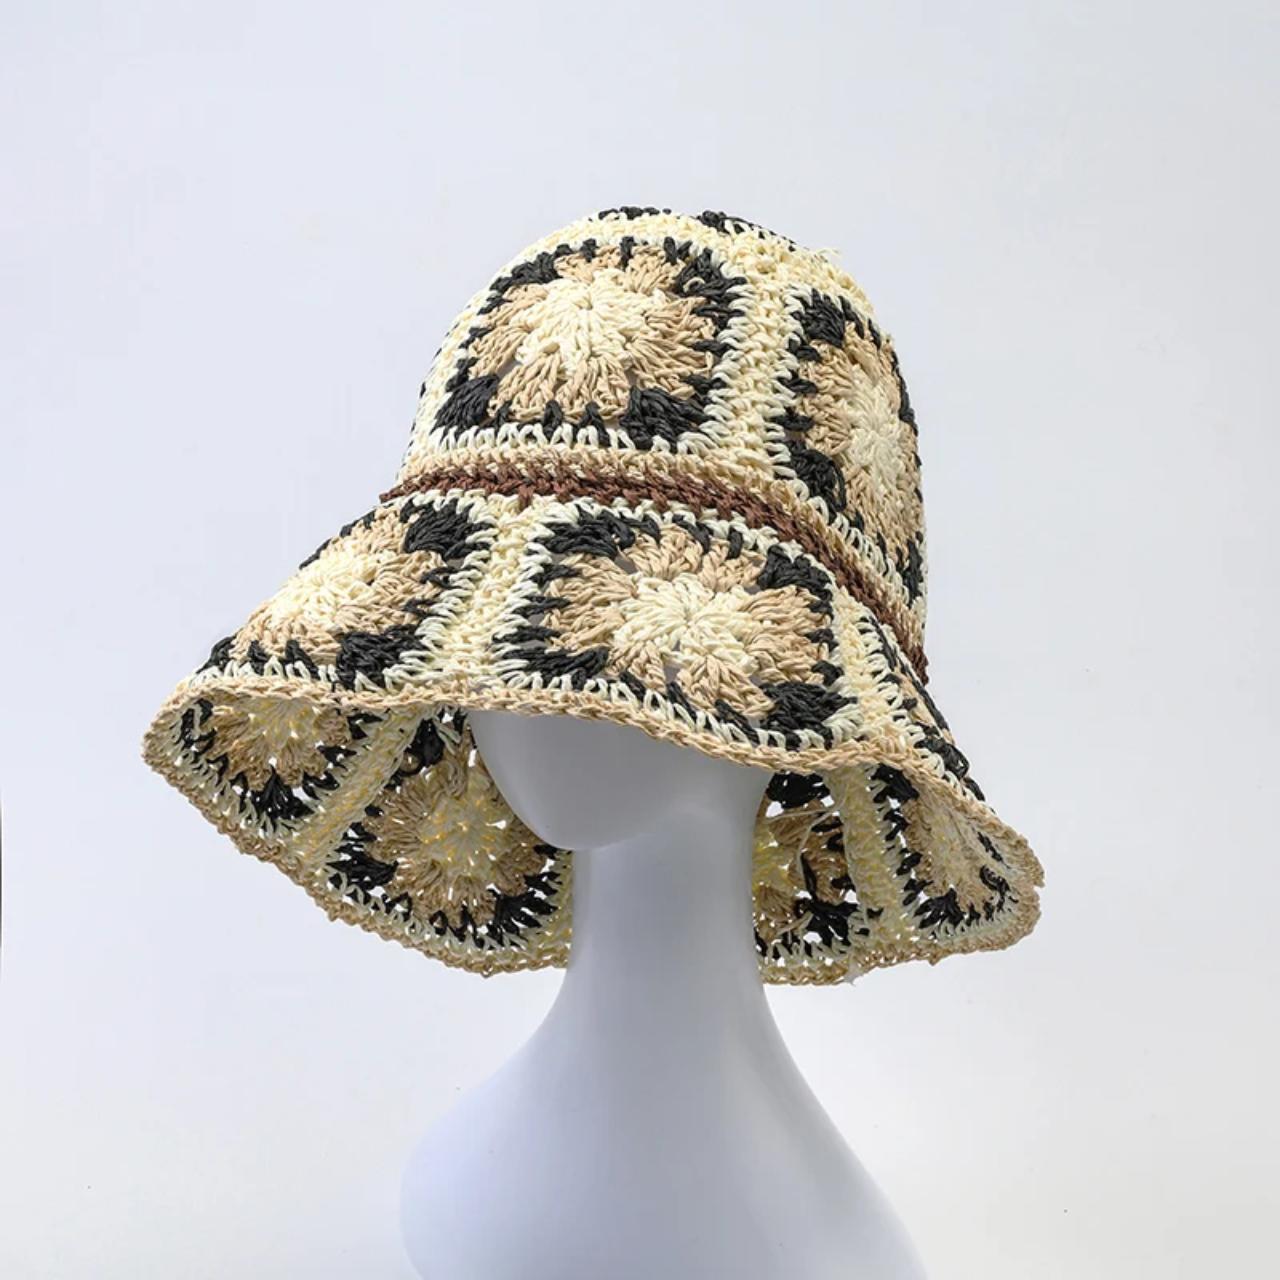 Crochet bucket hat for women sun protection foldable - Depop